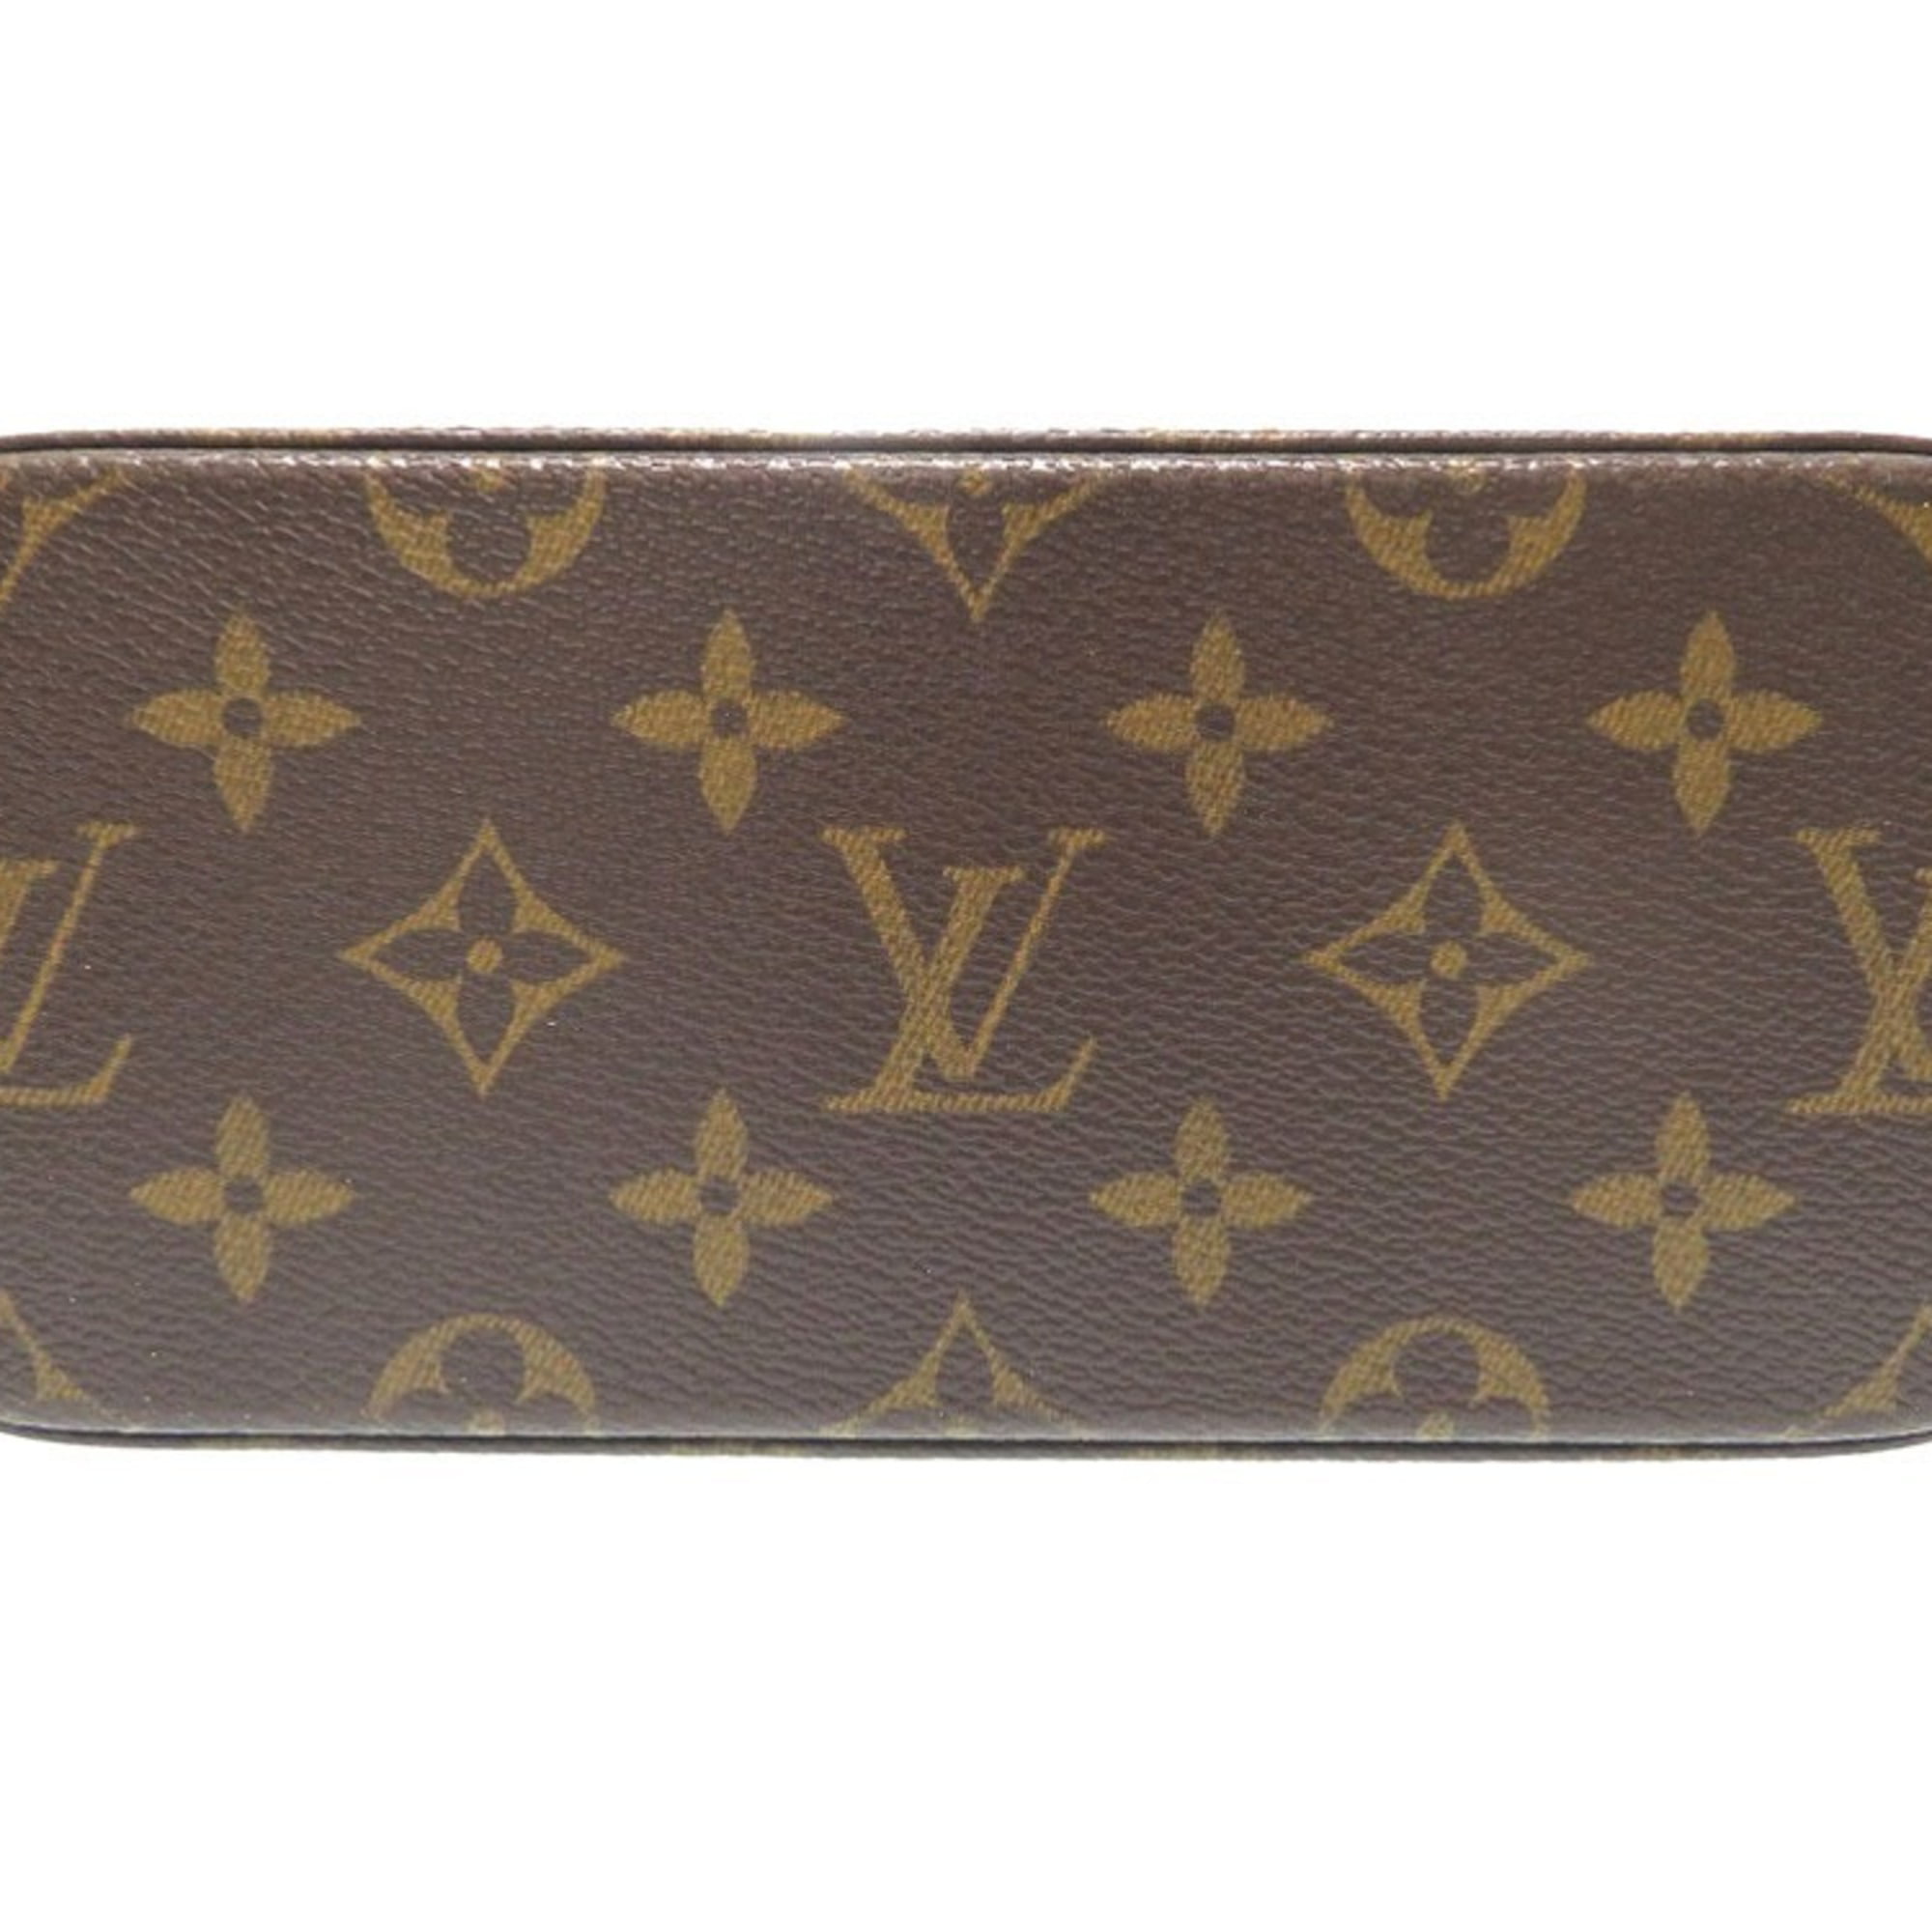 Authentic Louis Vuitton Bel Air PM 2 Way Monogram Shoulder Bag M51122  Signature